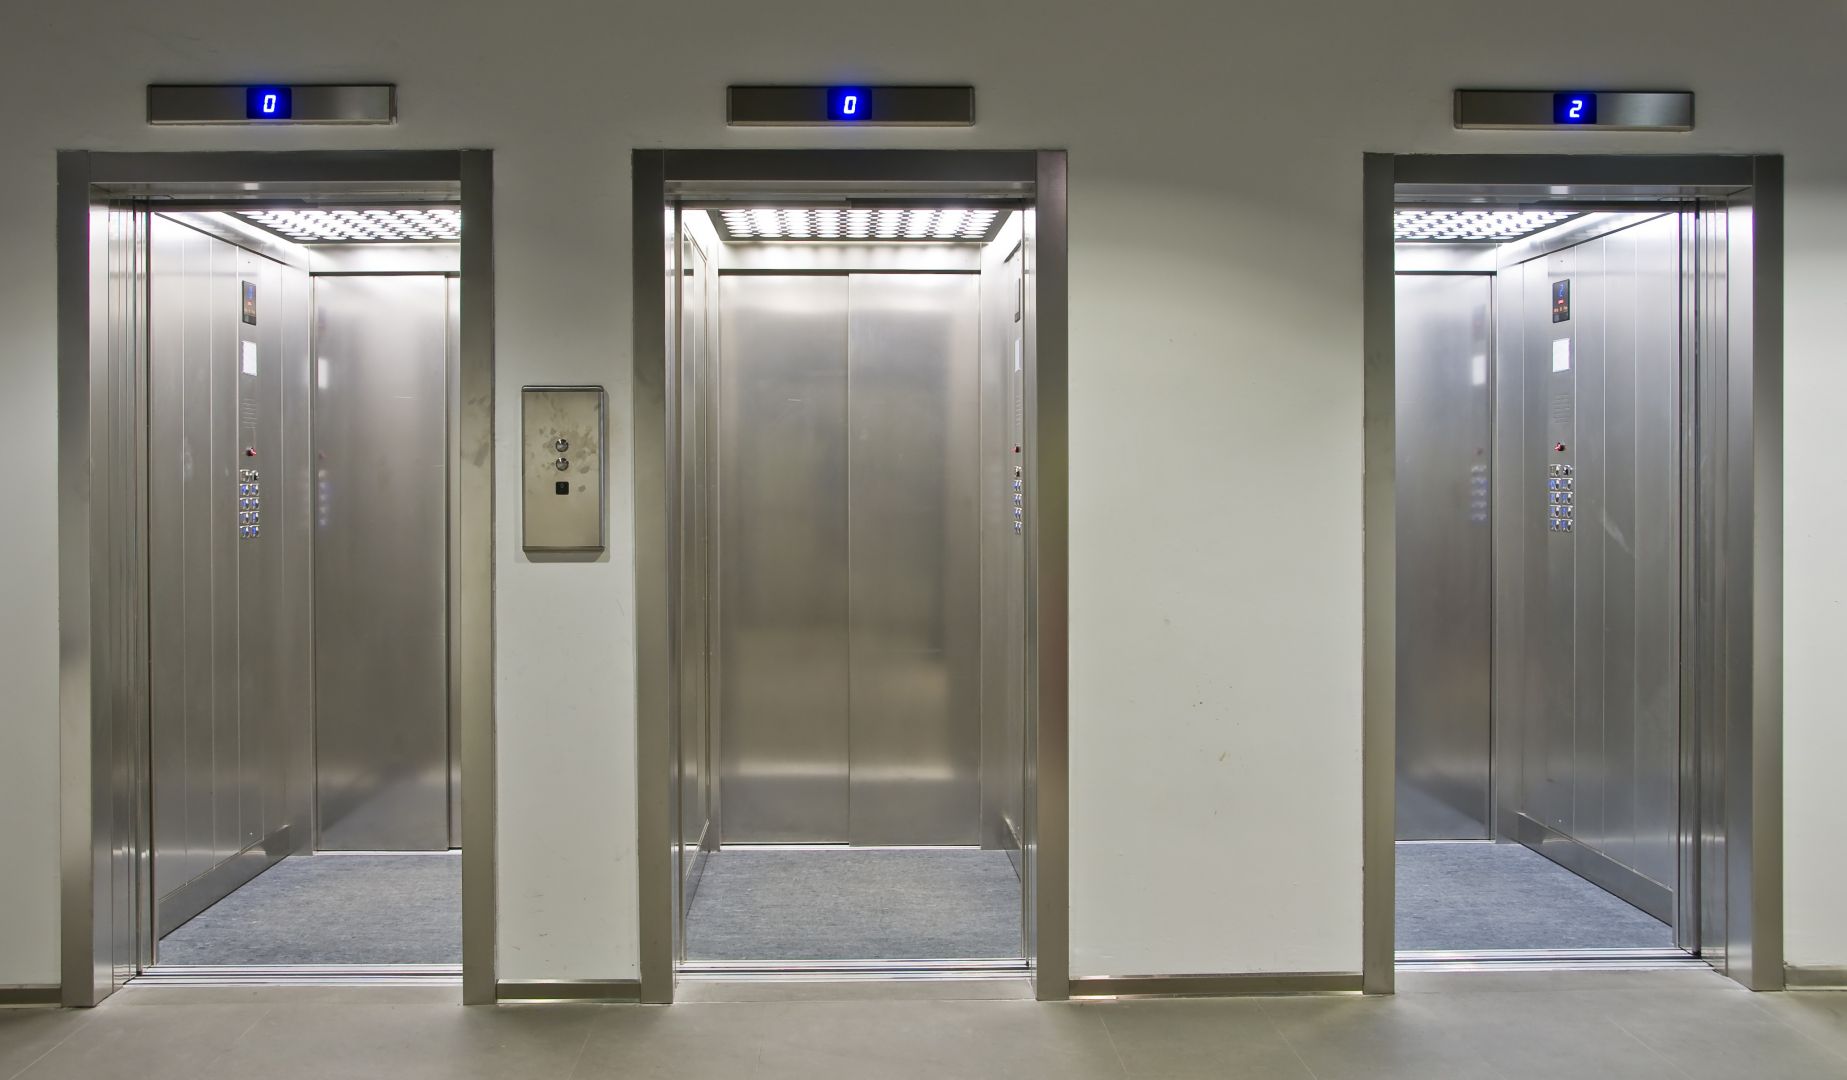 Zakázka na rekonstrukce výtahů (Výtahy a servis) - Zlín